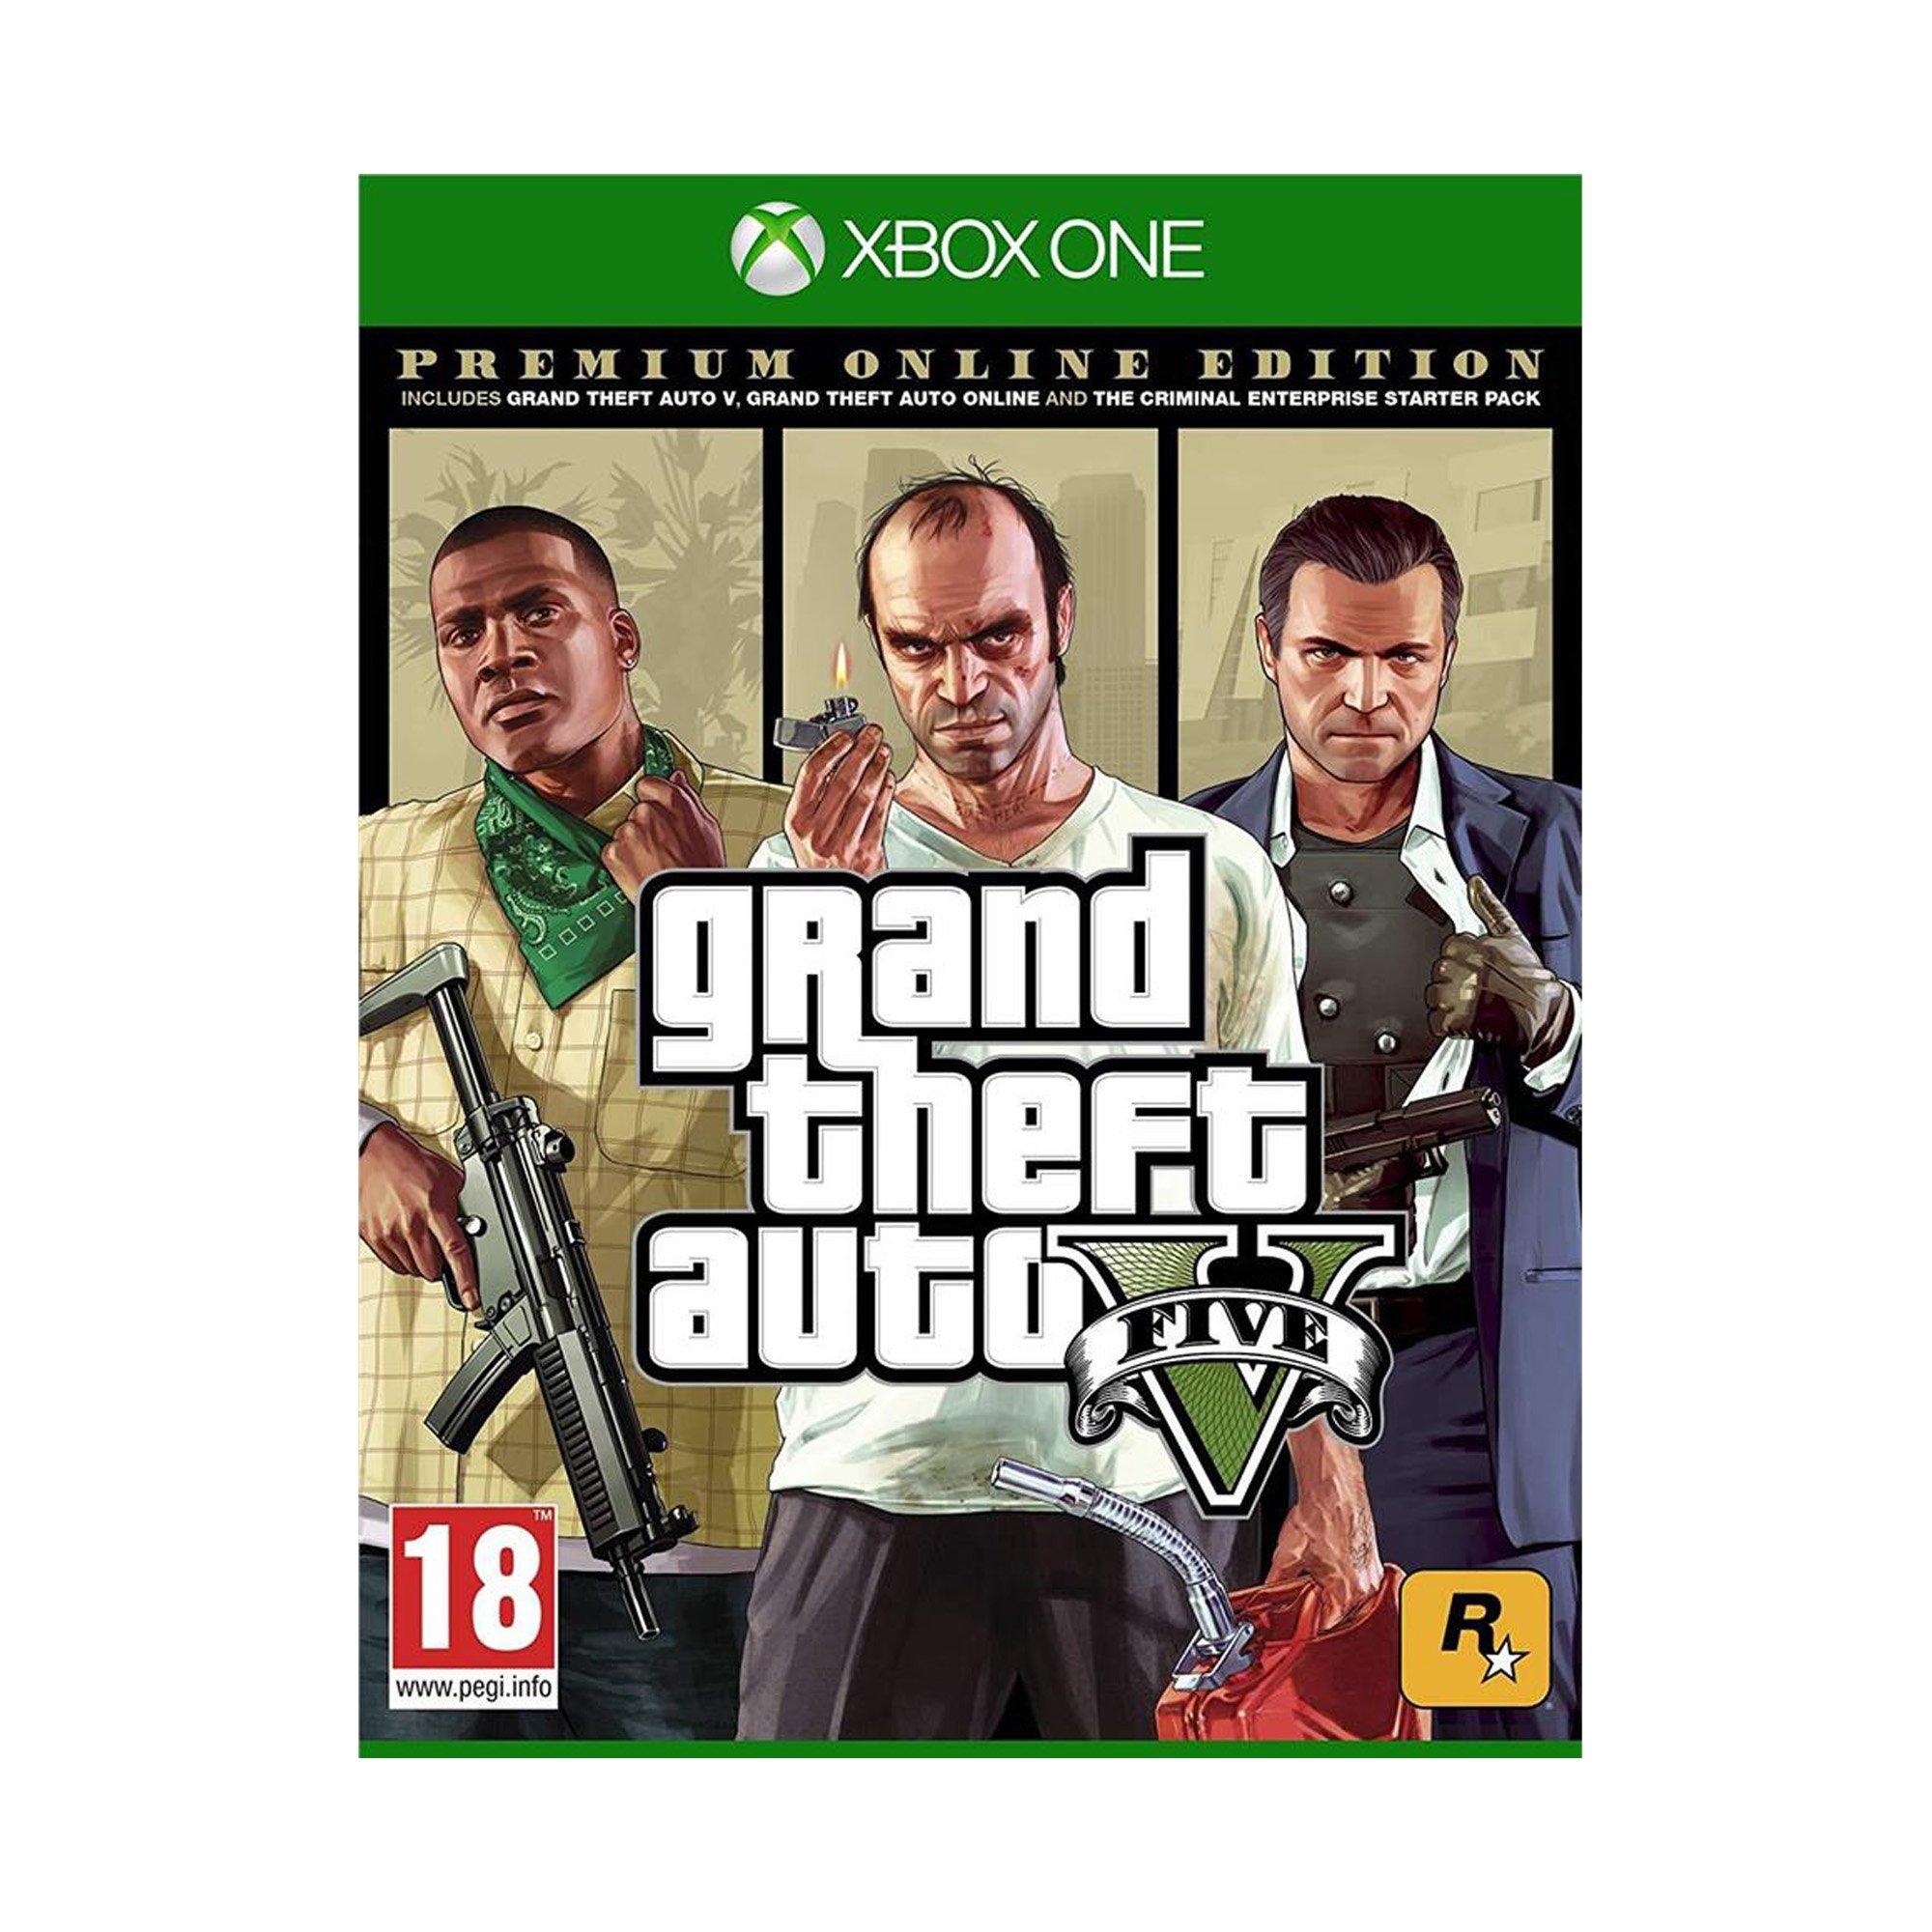 GAME GIOCO Grand Theft Auto 5 Edizione Premium Online game